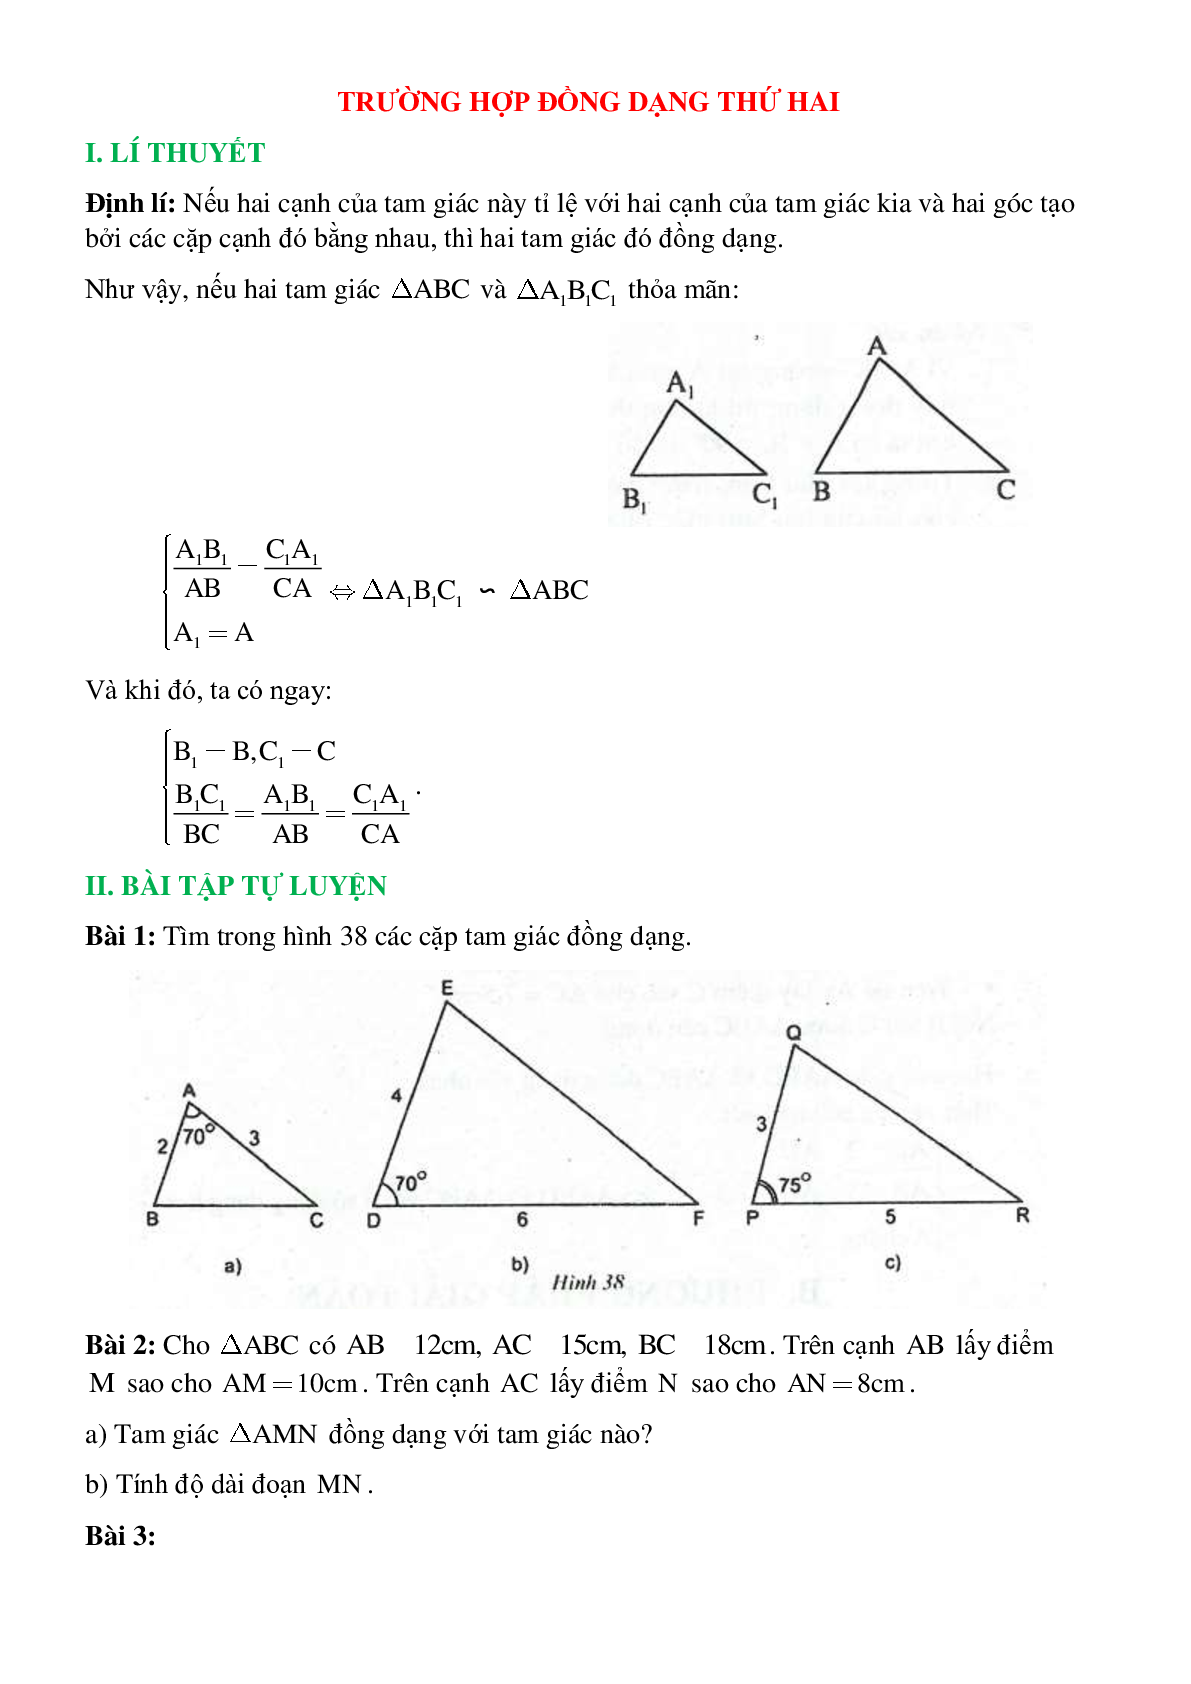 50 Bài tập Trường hợp đồng dạng thứ hai của hai tam giác (có đáp án)- Toán 8 (trang 1)